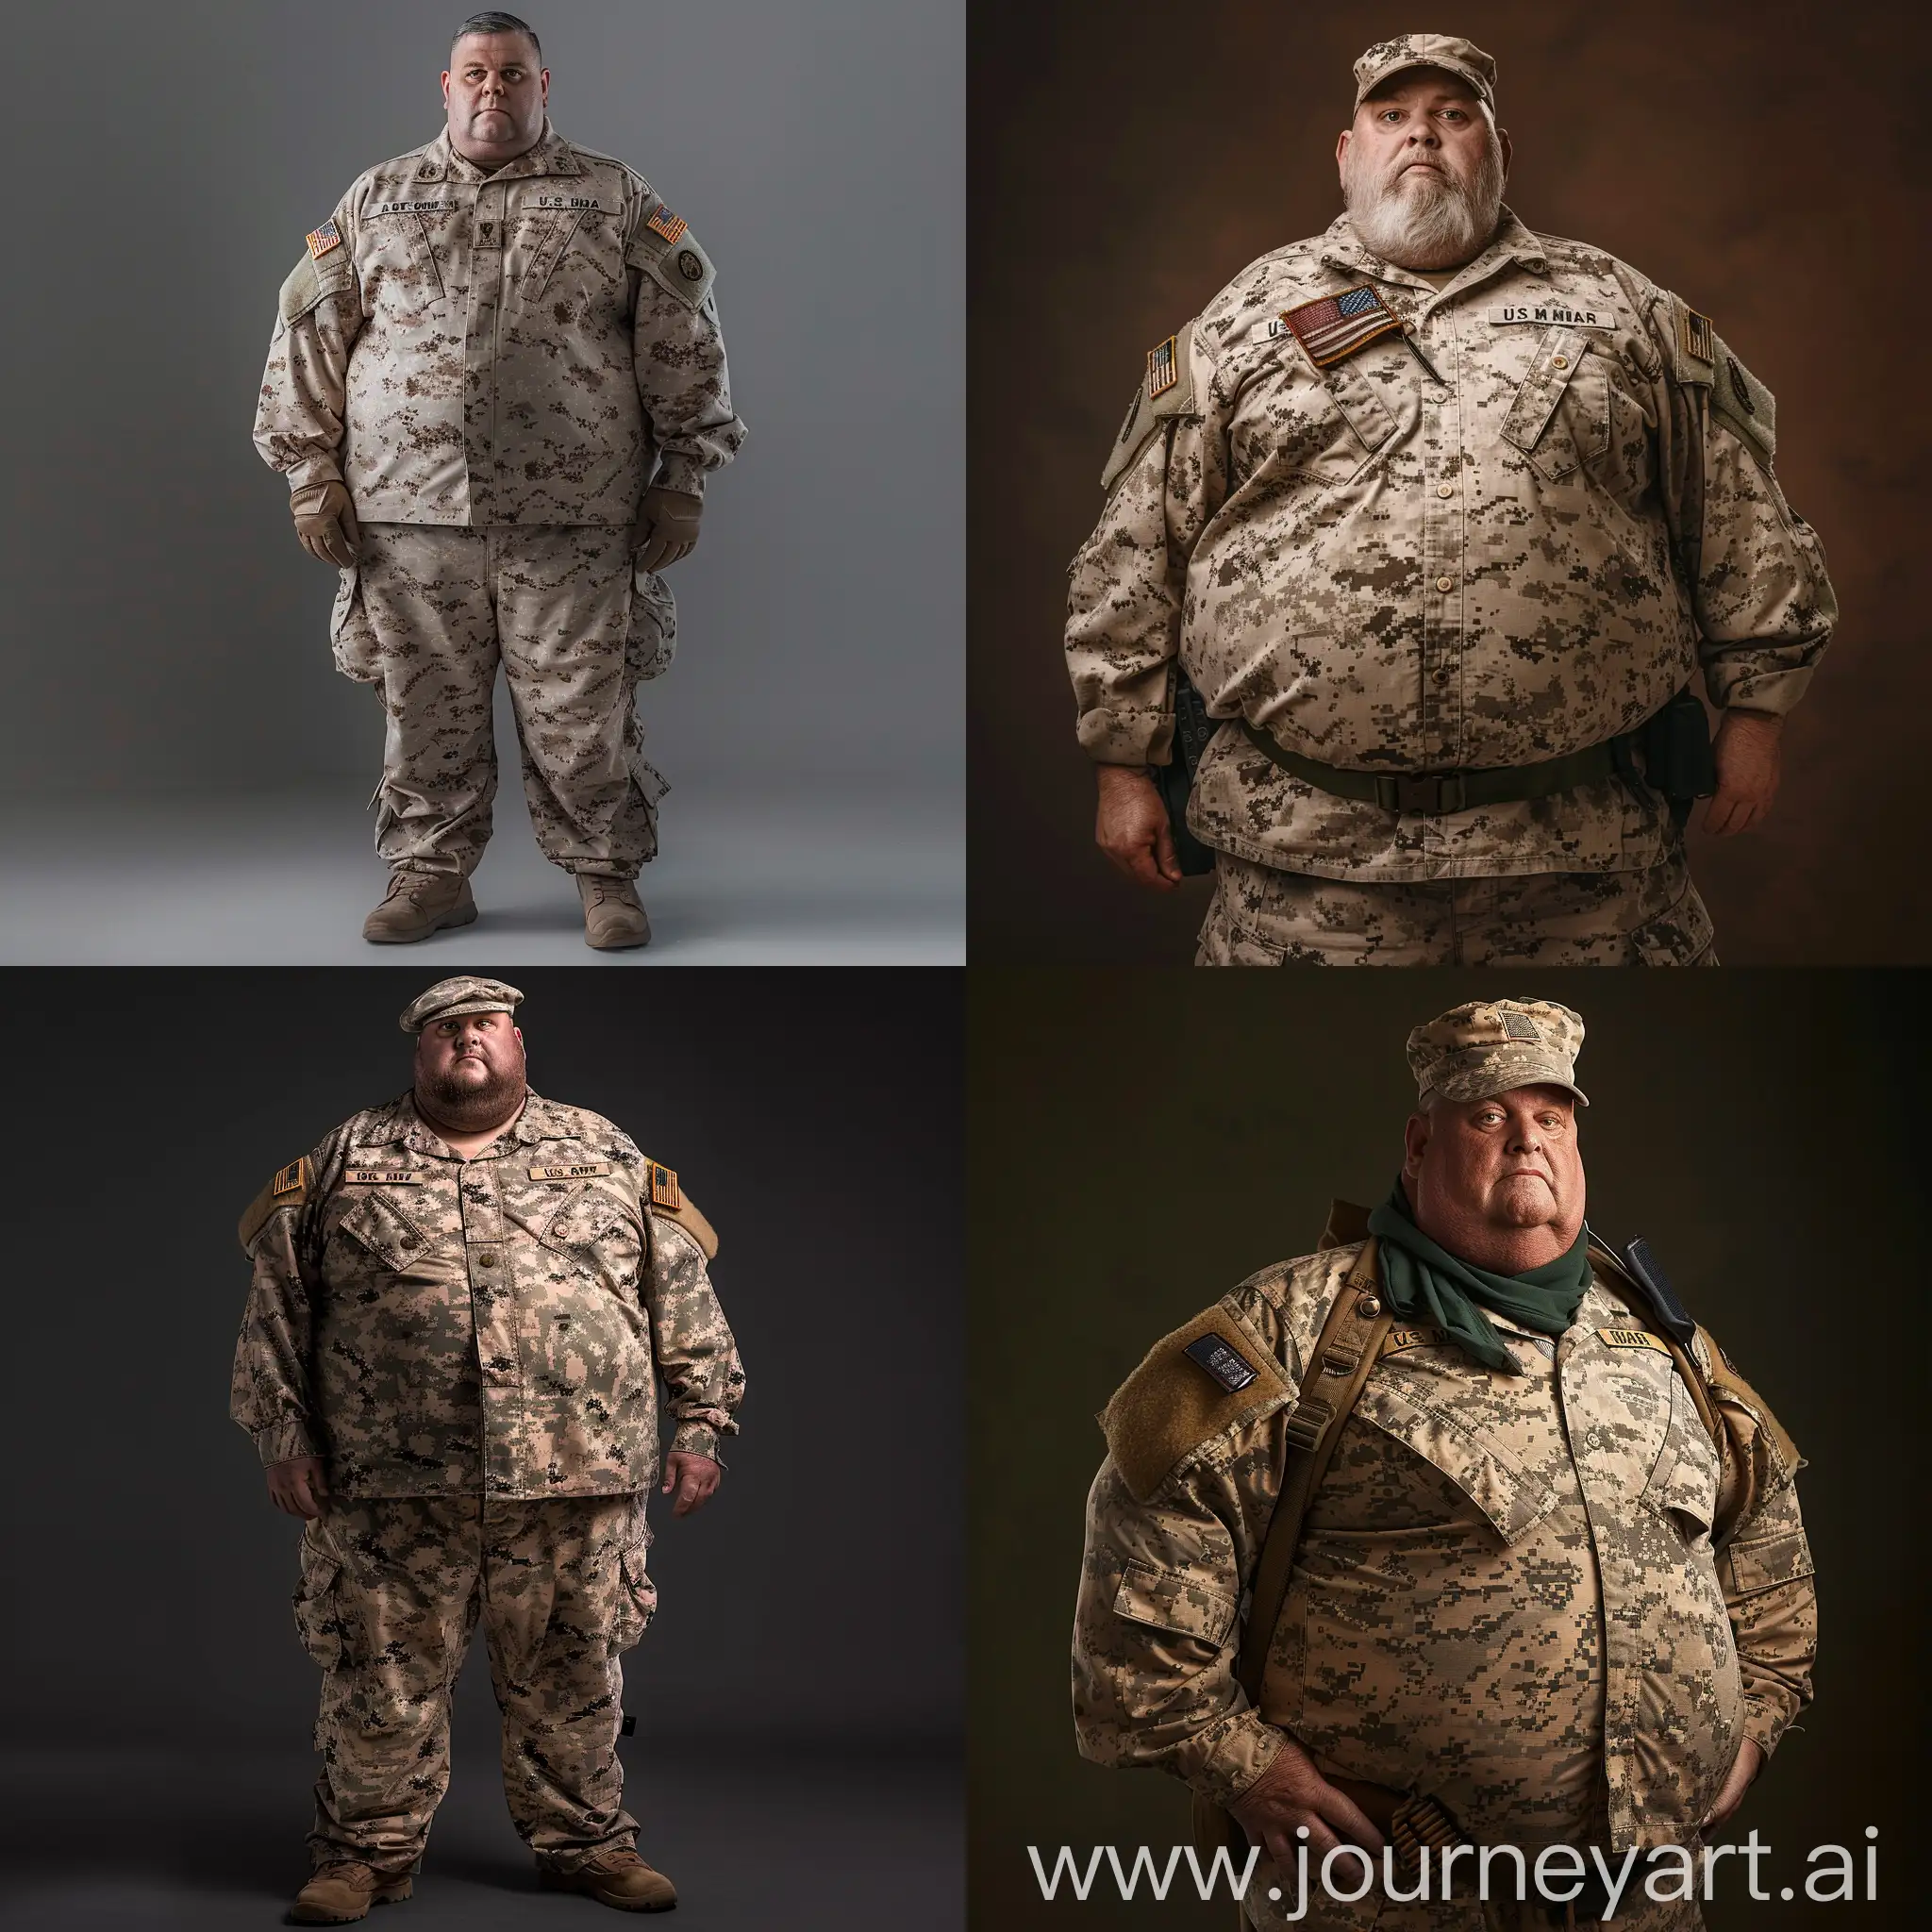 Veteran-Soldier-in-Full-Combat-Marine-Uniform-Patriotic-Portrait